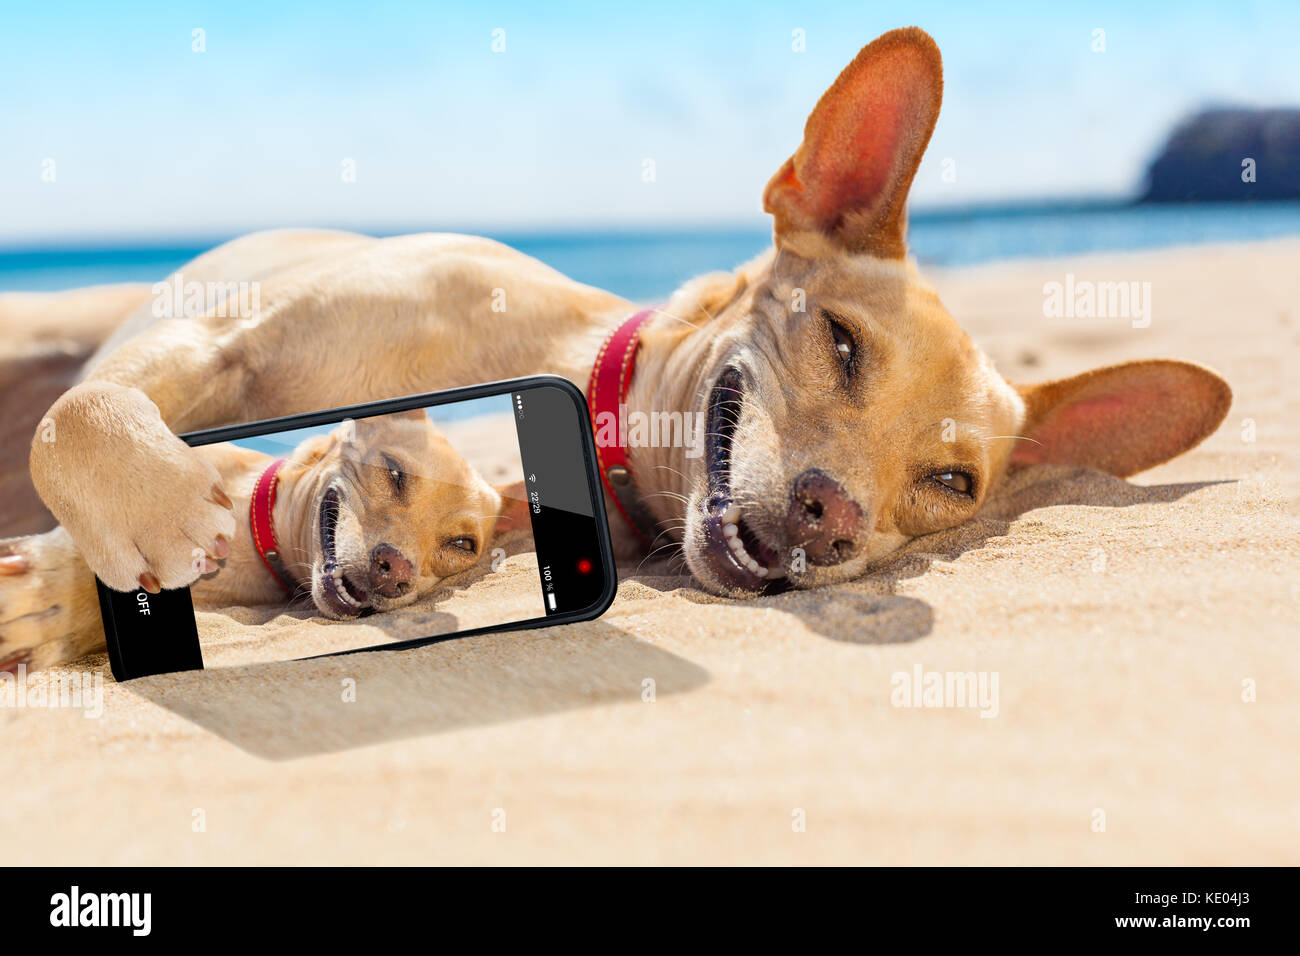 Chihuahua cane il relax e il riposo , distesi sulla sabbia in spiaggia su vacanze estive vacanze,tenendo un selfie per gli amici Foto Stock